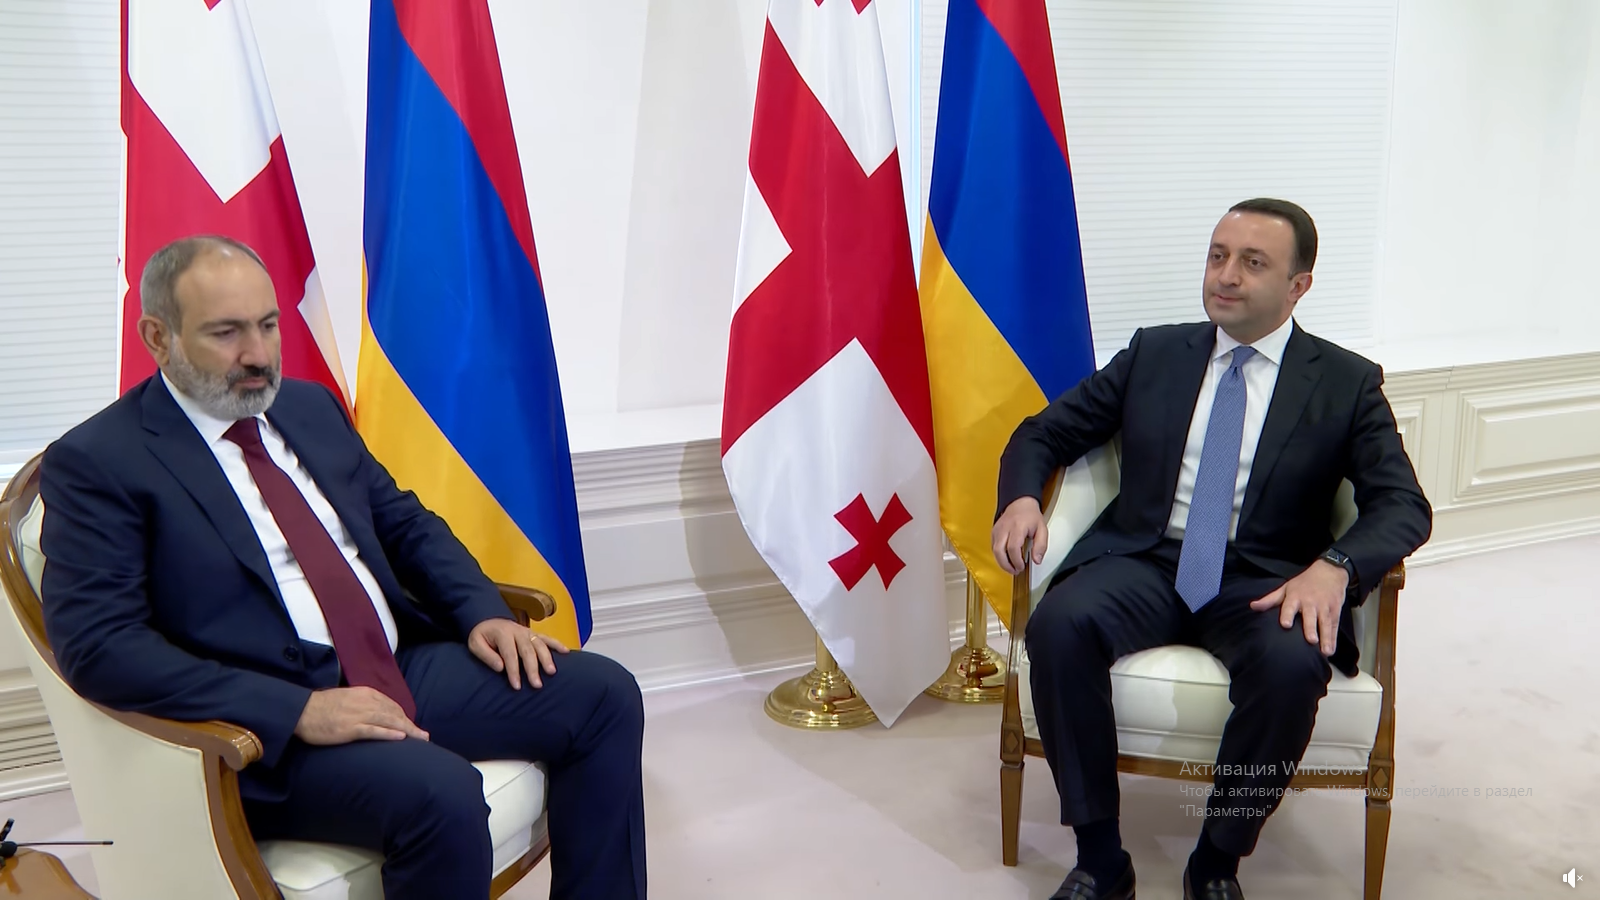 Հայաստանի և Վրաստանի վարչապետները ԶԼՄ-ի ներկայացուցաիչների առաջ հանդես են եկել հանդիպումն ամփոփող հայտարարություններով